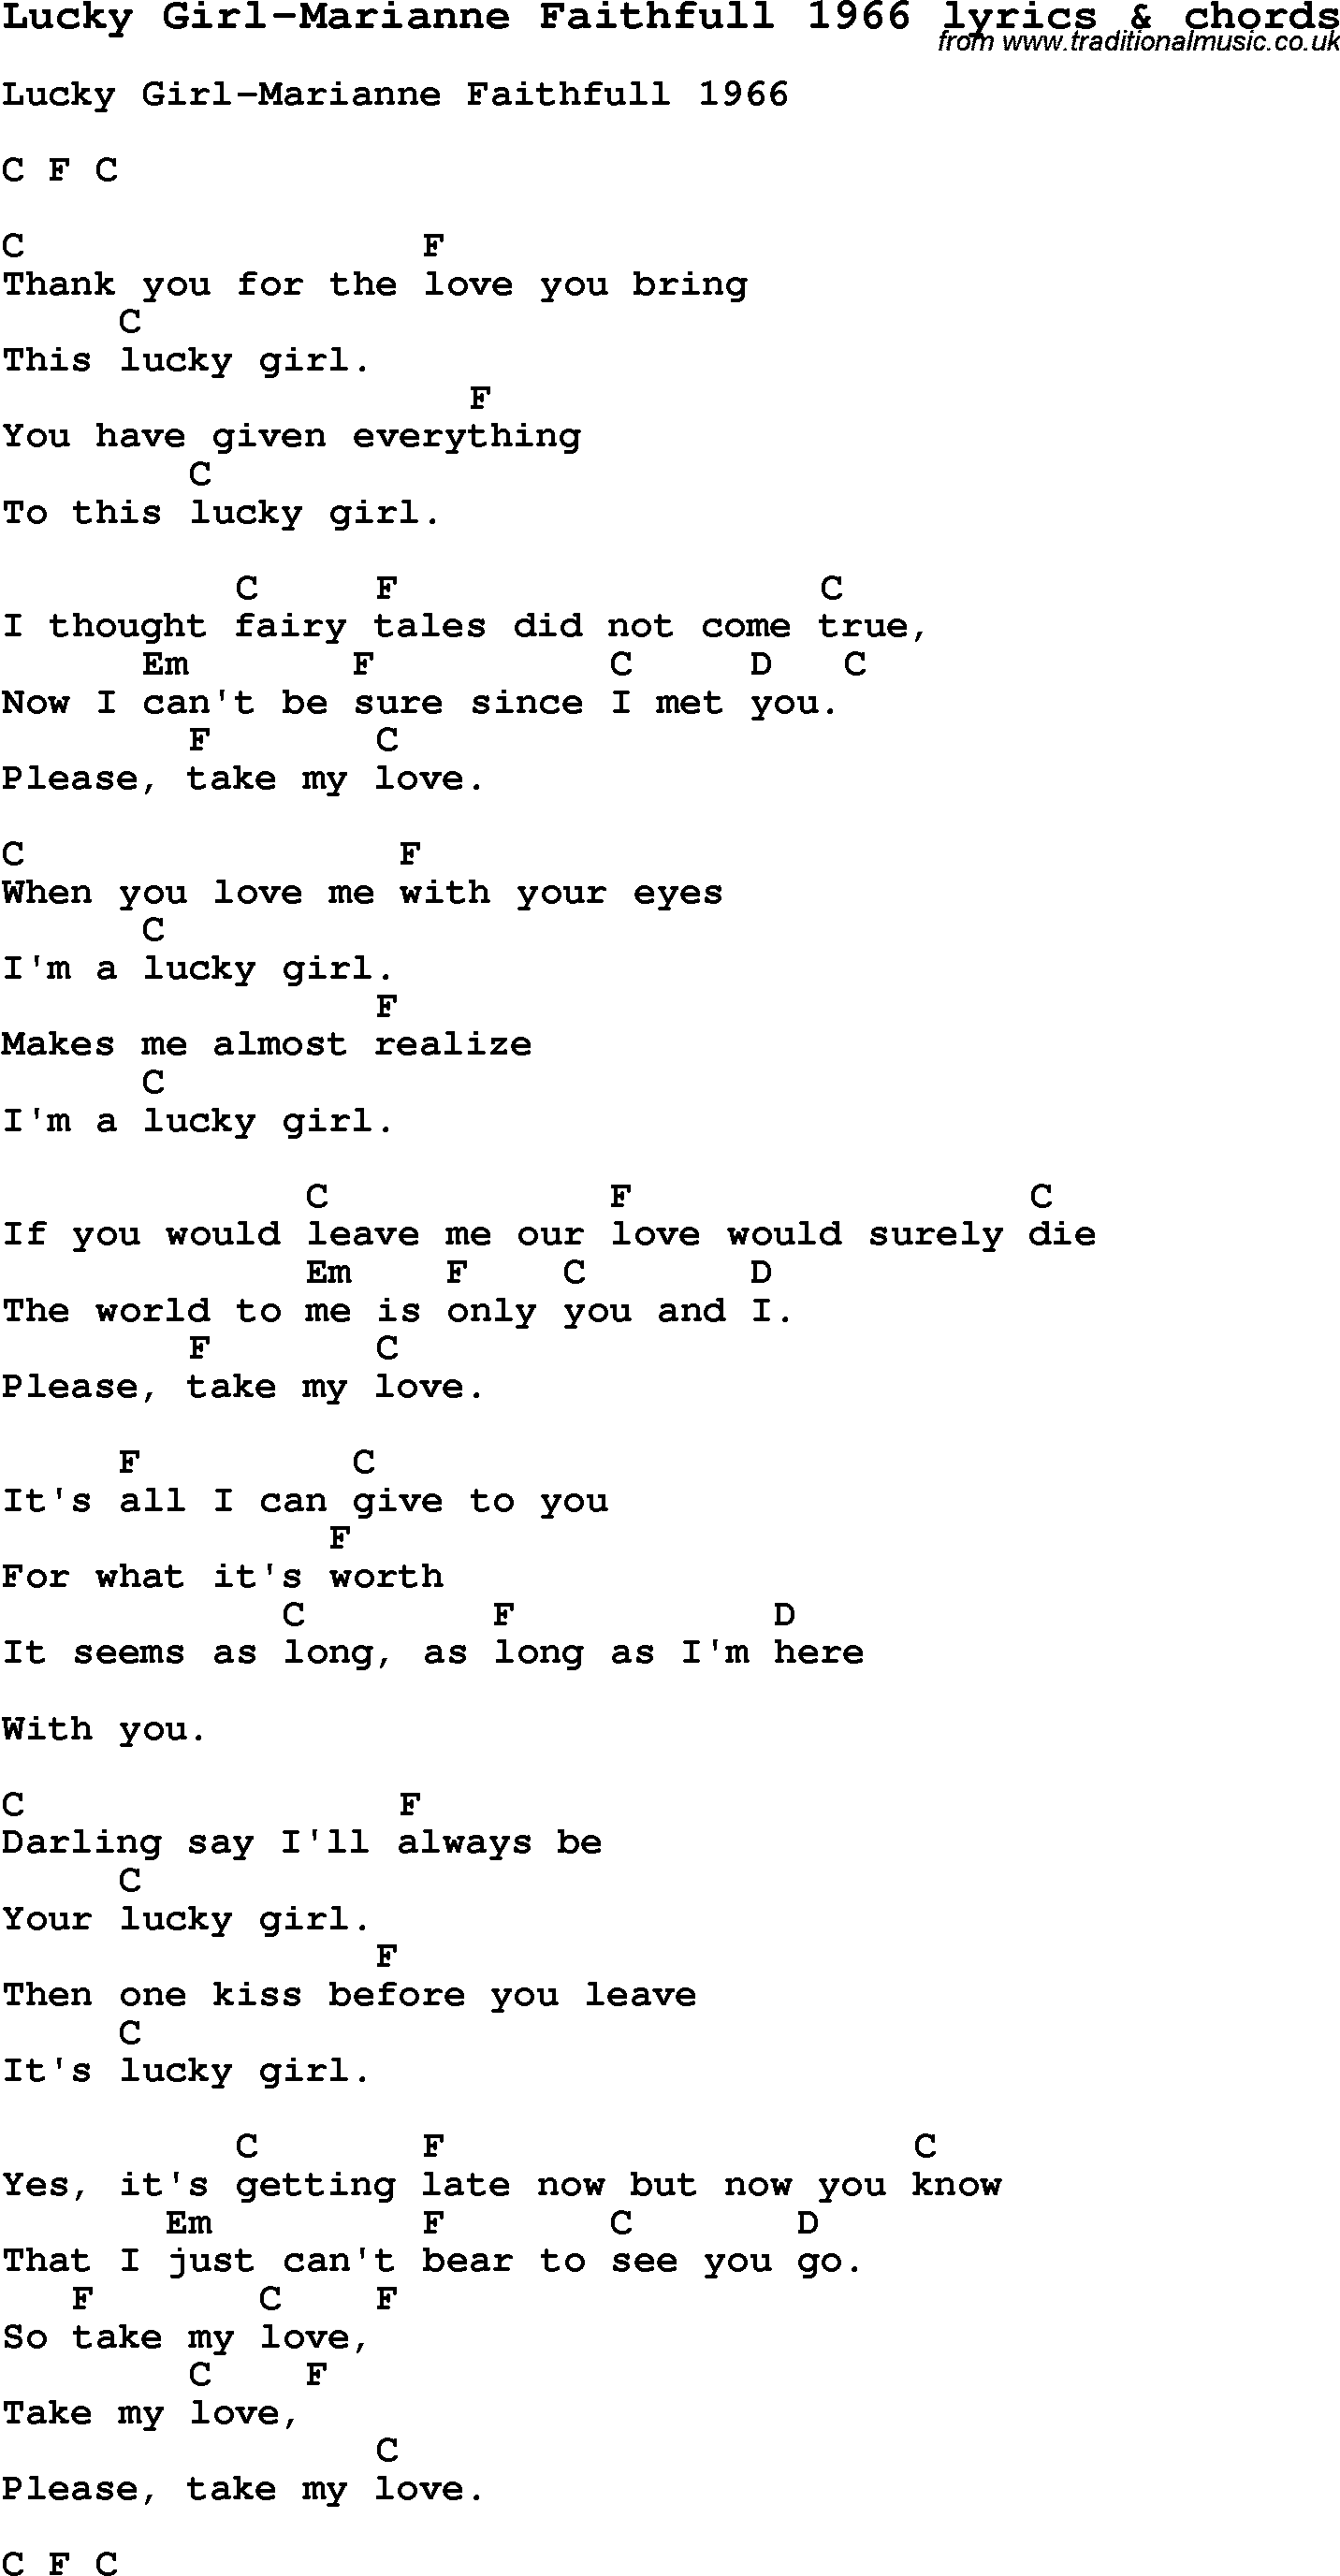 Love Song Lyrics for: Lucky Girl-Marianne Faithfull 1966 with chords for Ukulele, Guitar Banjo etc.